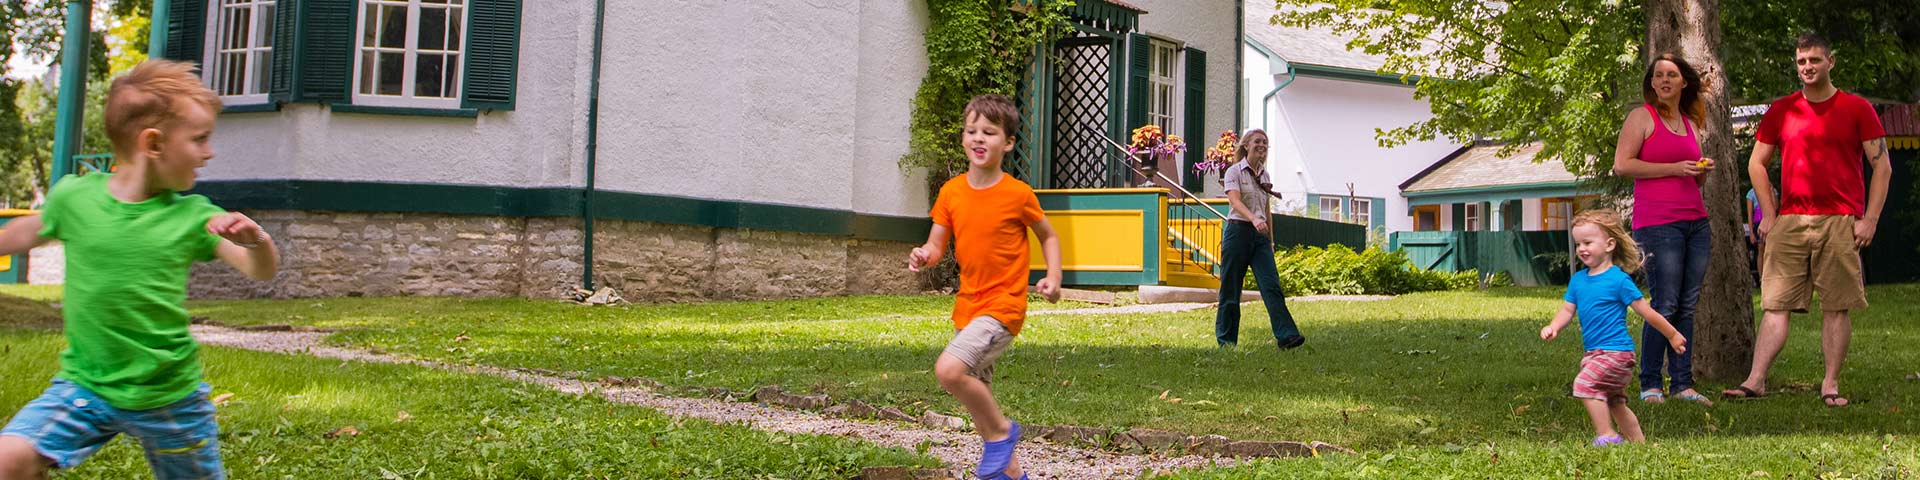 Les enfants courent dans les jardins de Bellevue House.